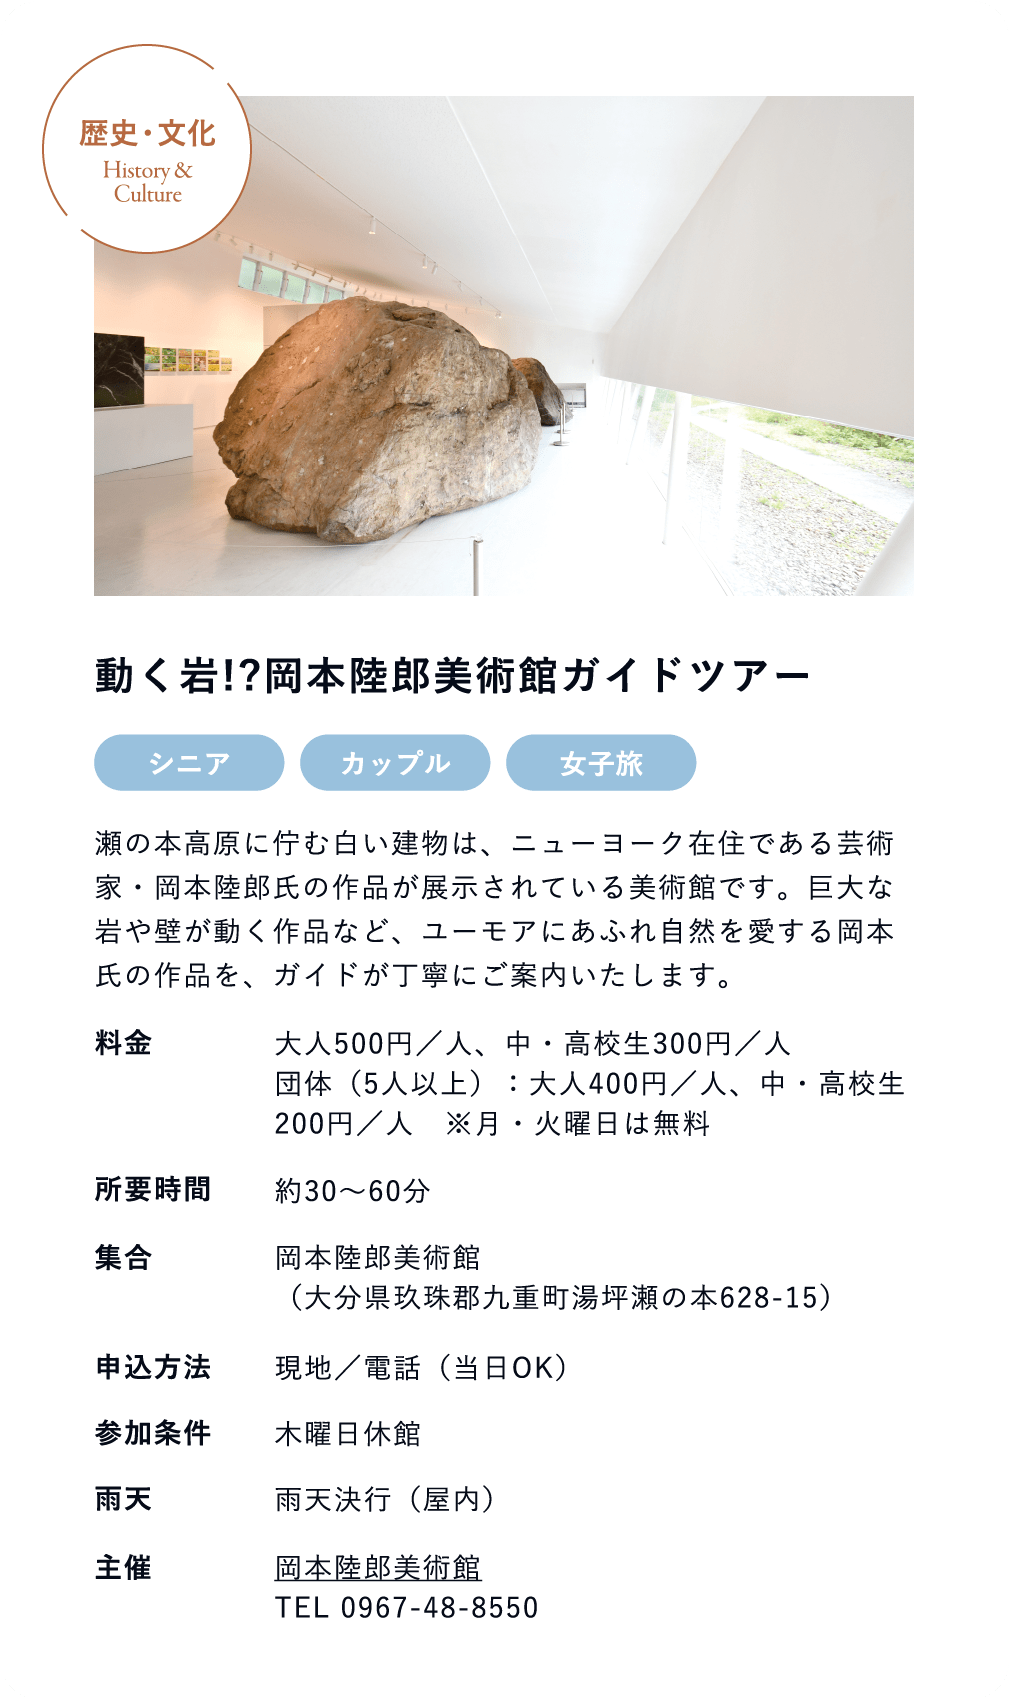 動く岩!?岡本陸郎美術館ガイドツアー